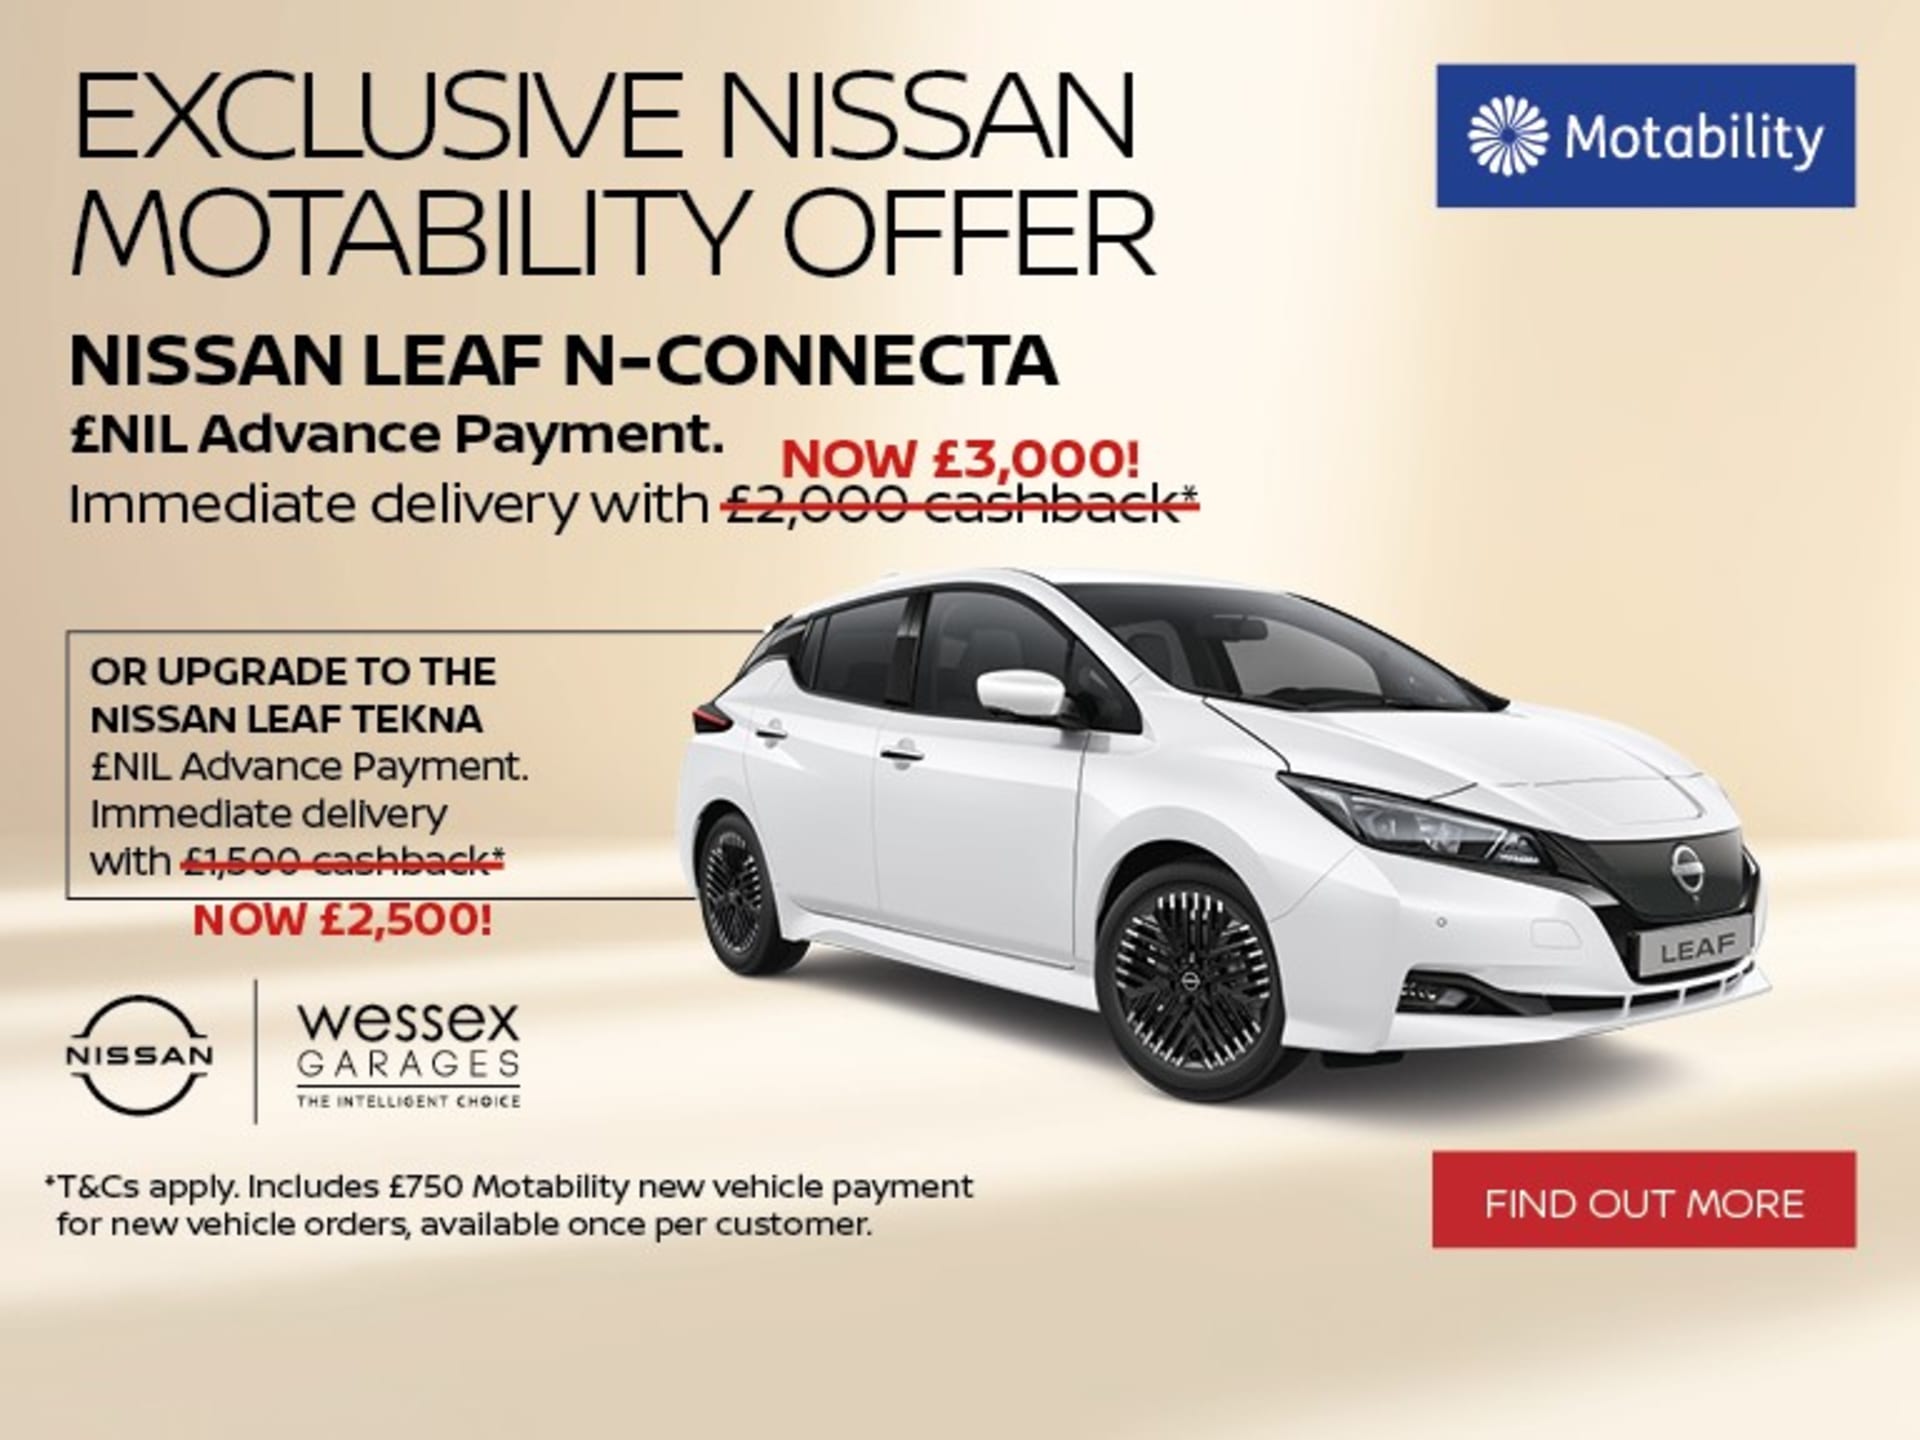 Nissan Leaf Motability Offer